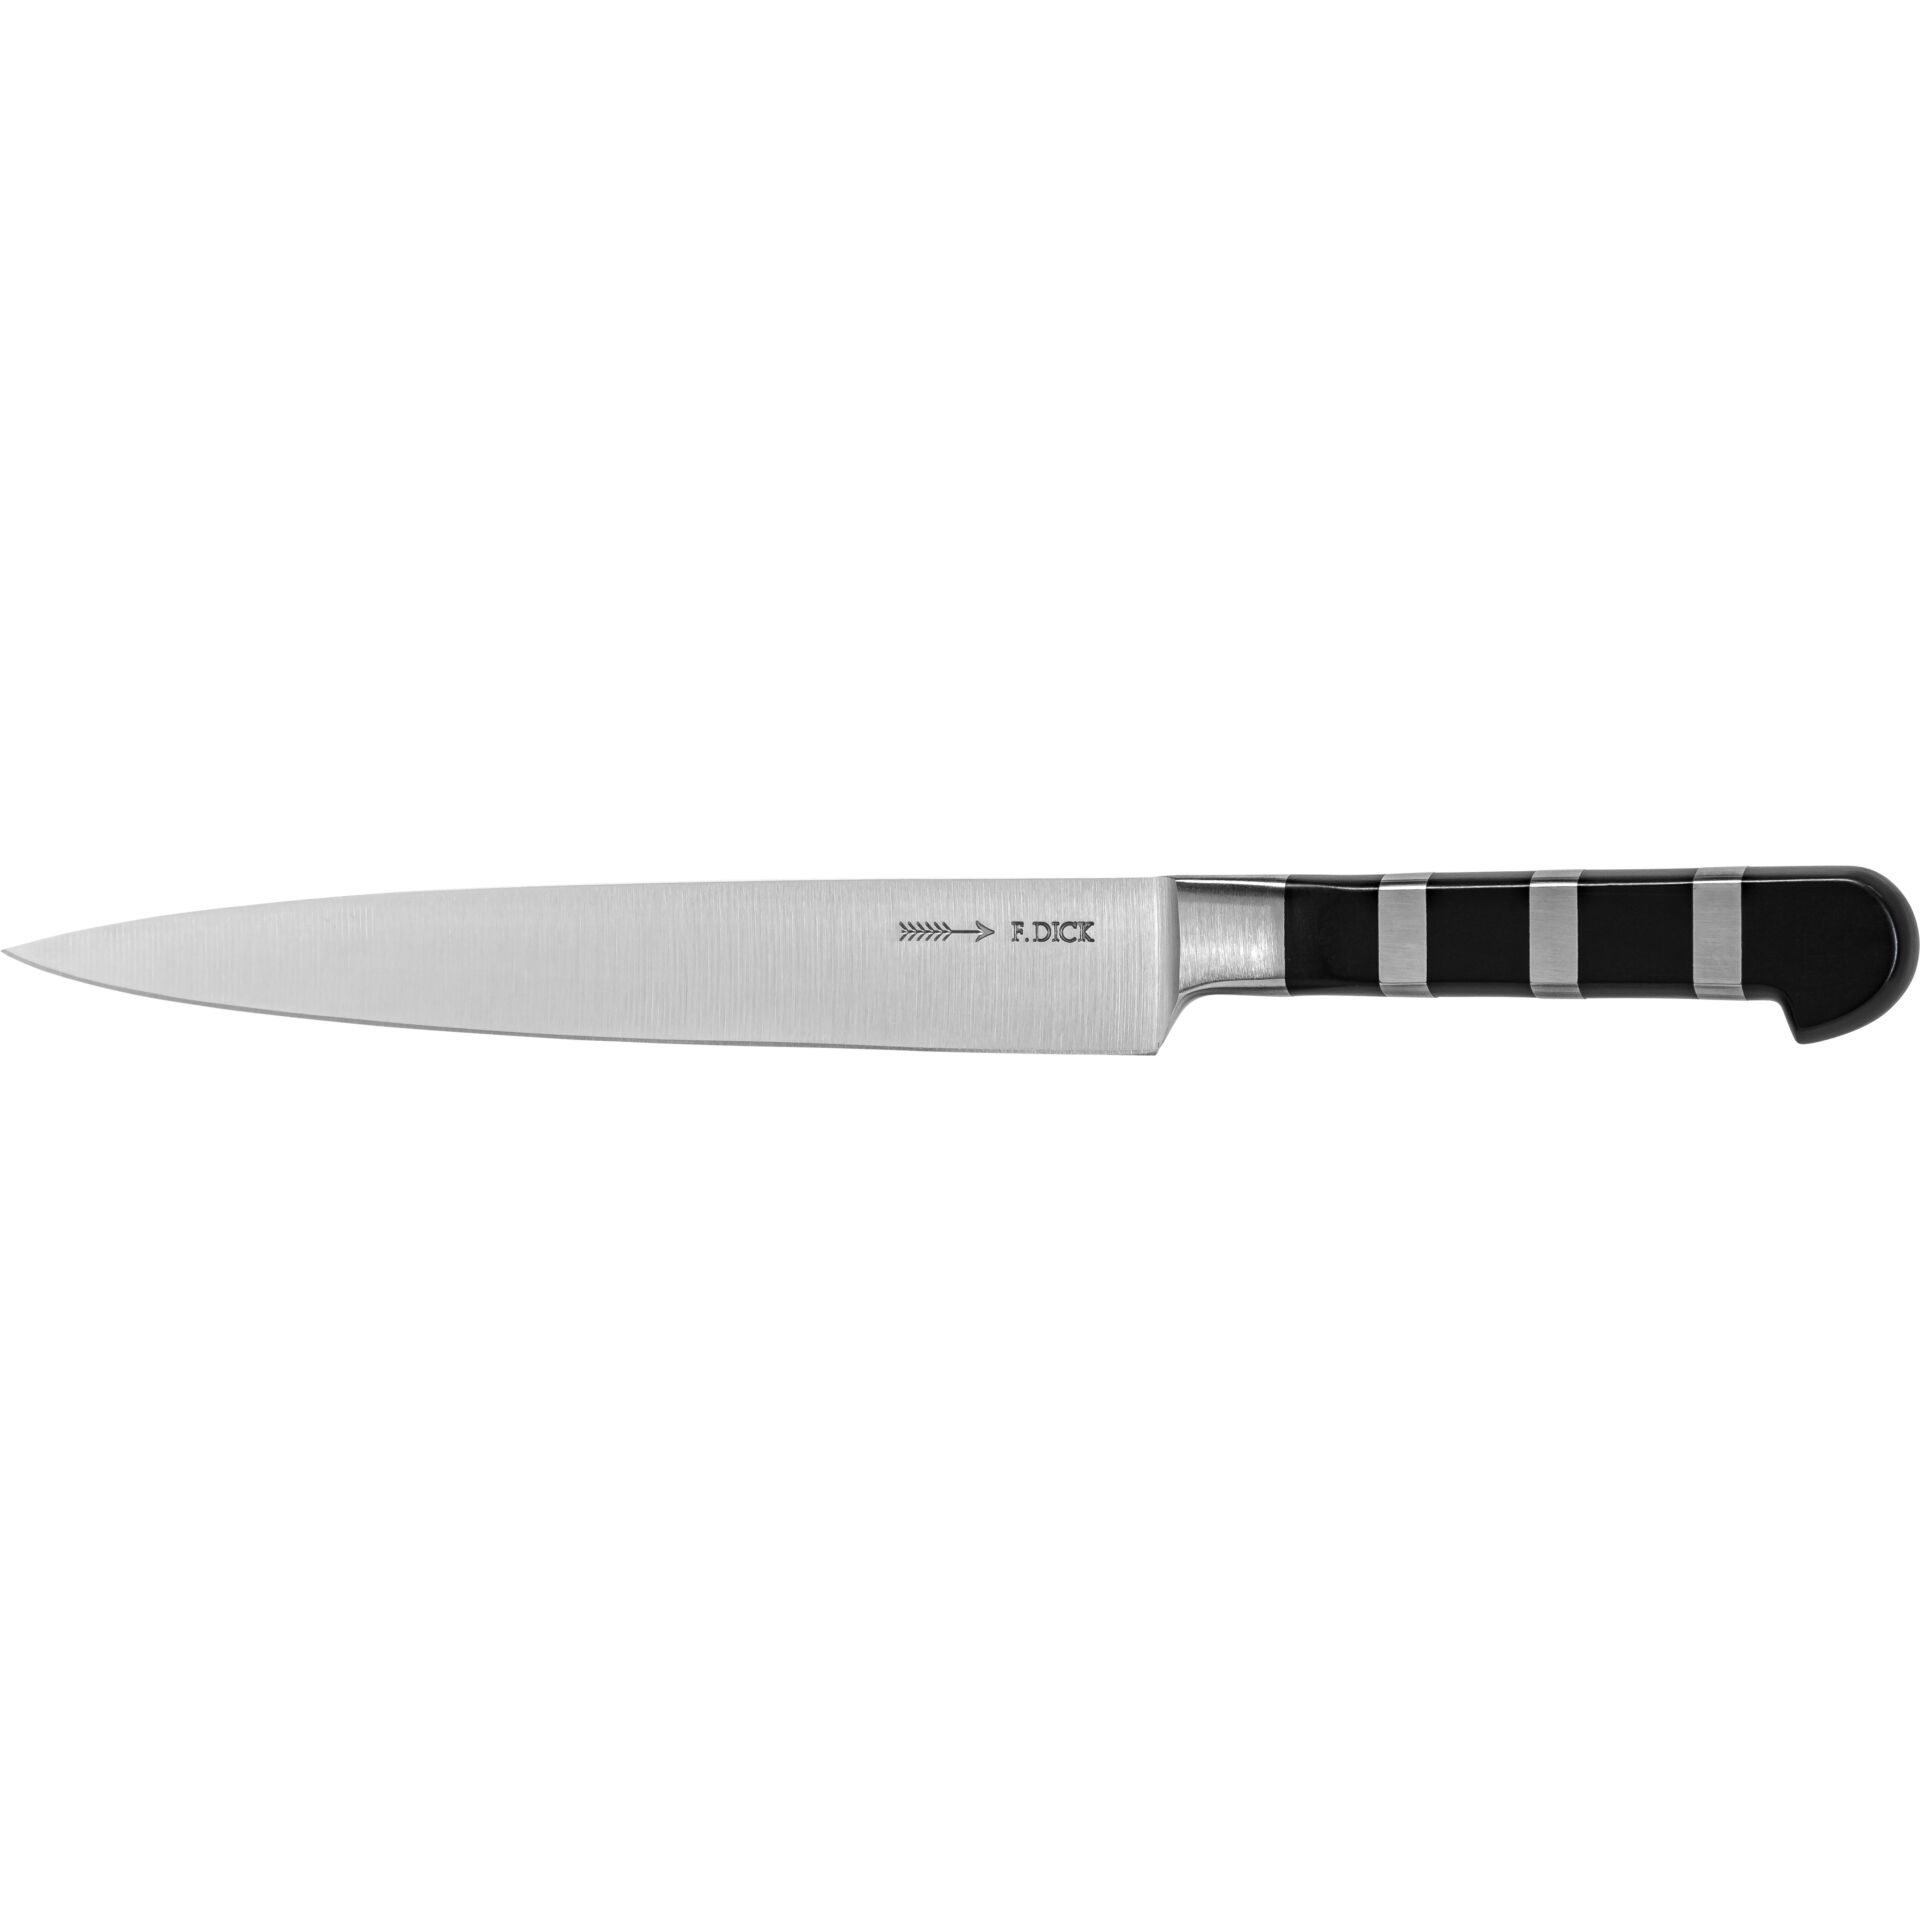 Dick coltello da cucina 21 cm